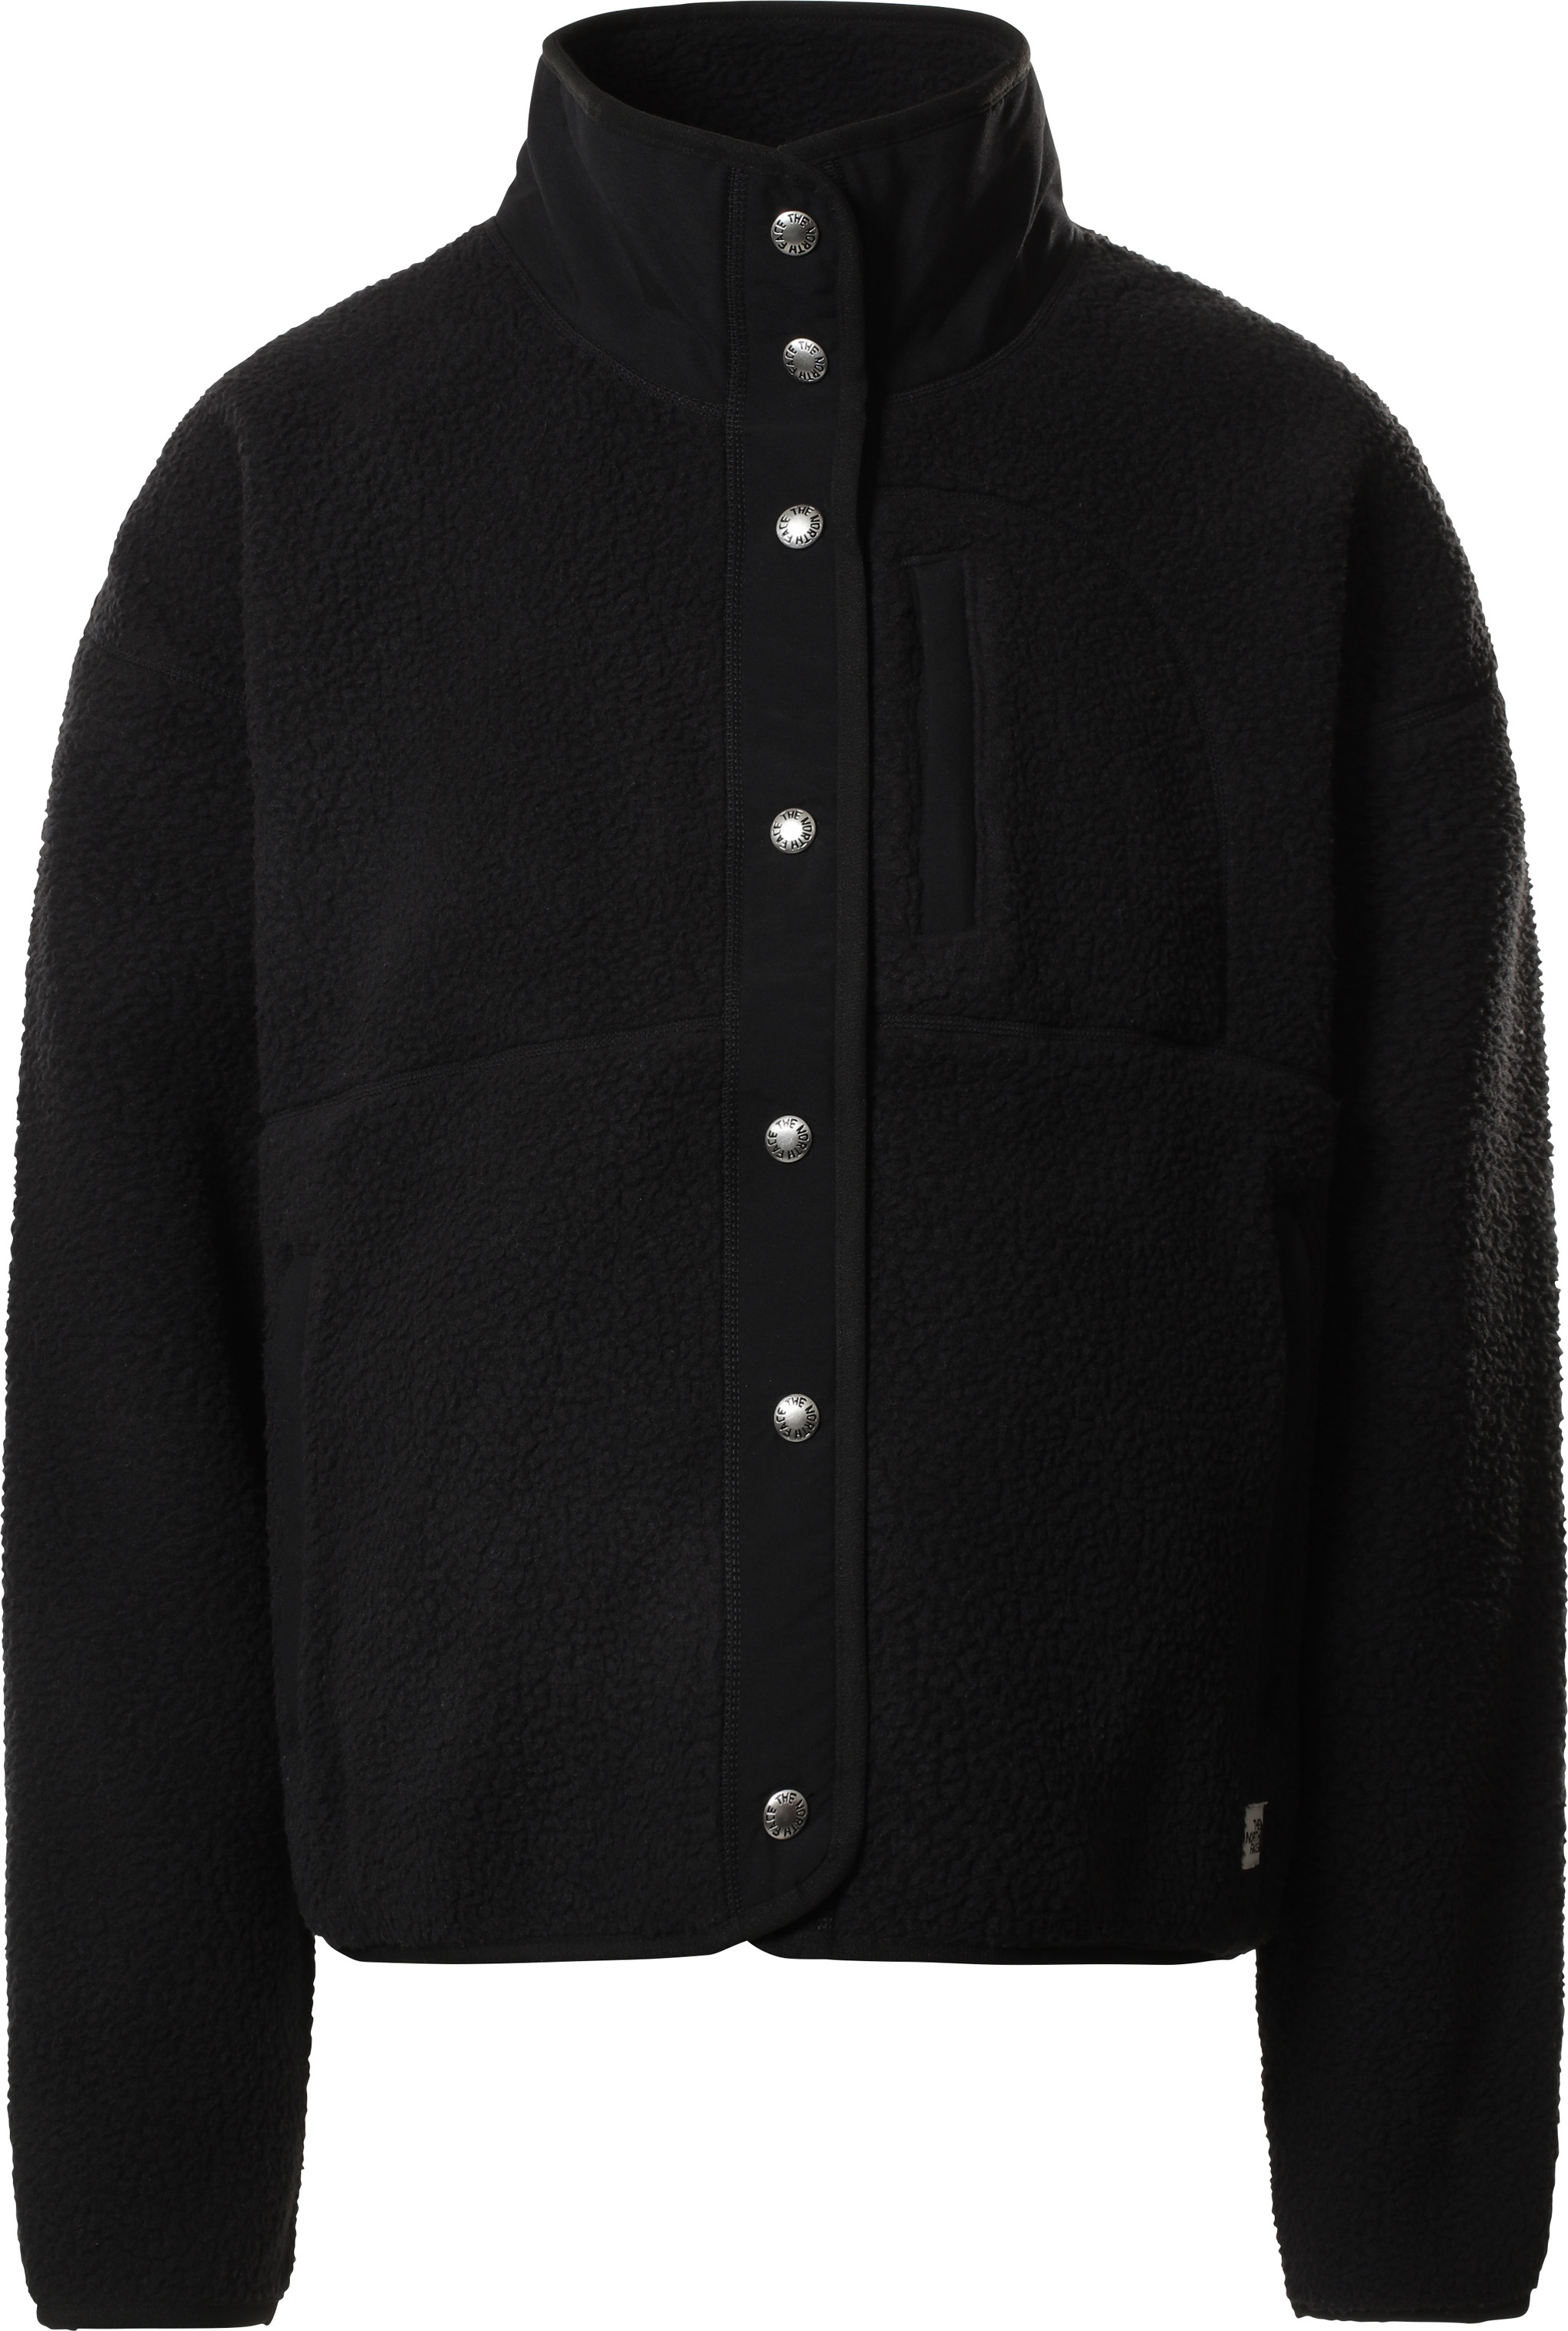 Women’s Cragmont Fleece Jacket TNF BLACK